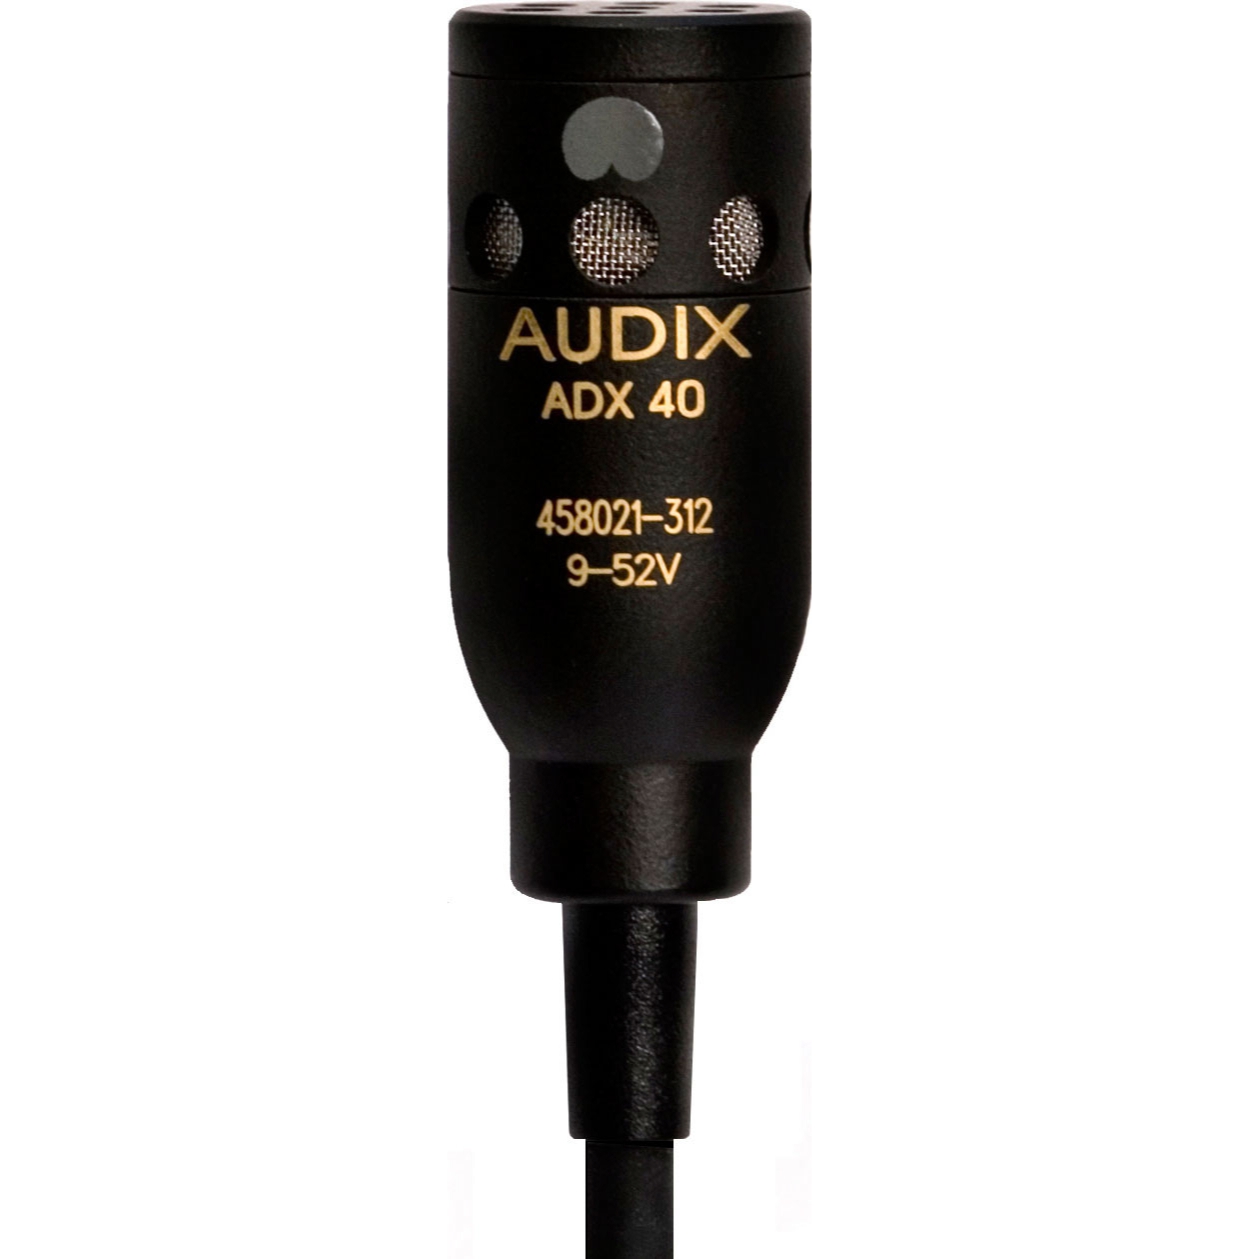 Студийные микрофоны AUDIX ADX40HC микрофон mobicent bm 800 c ветрозащитой кабелем и переходником для телефона